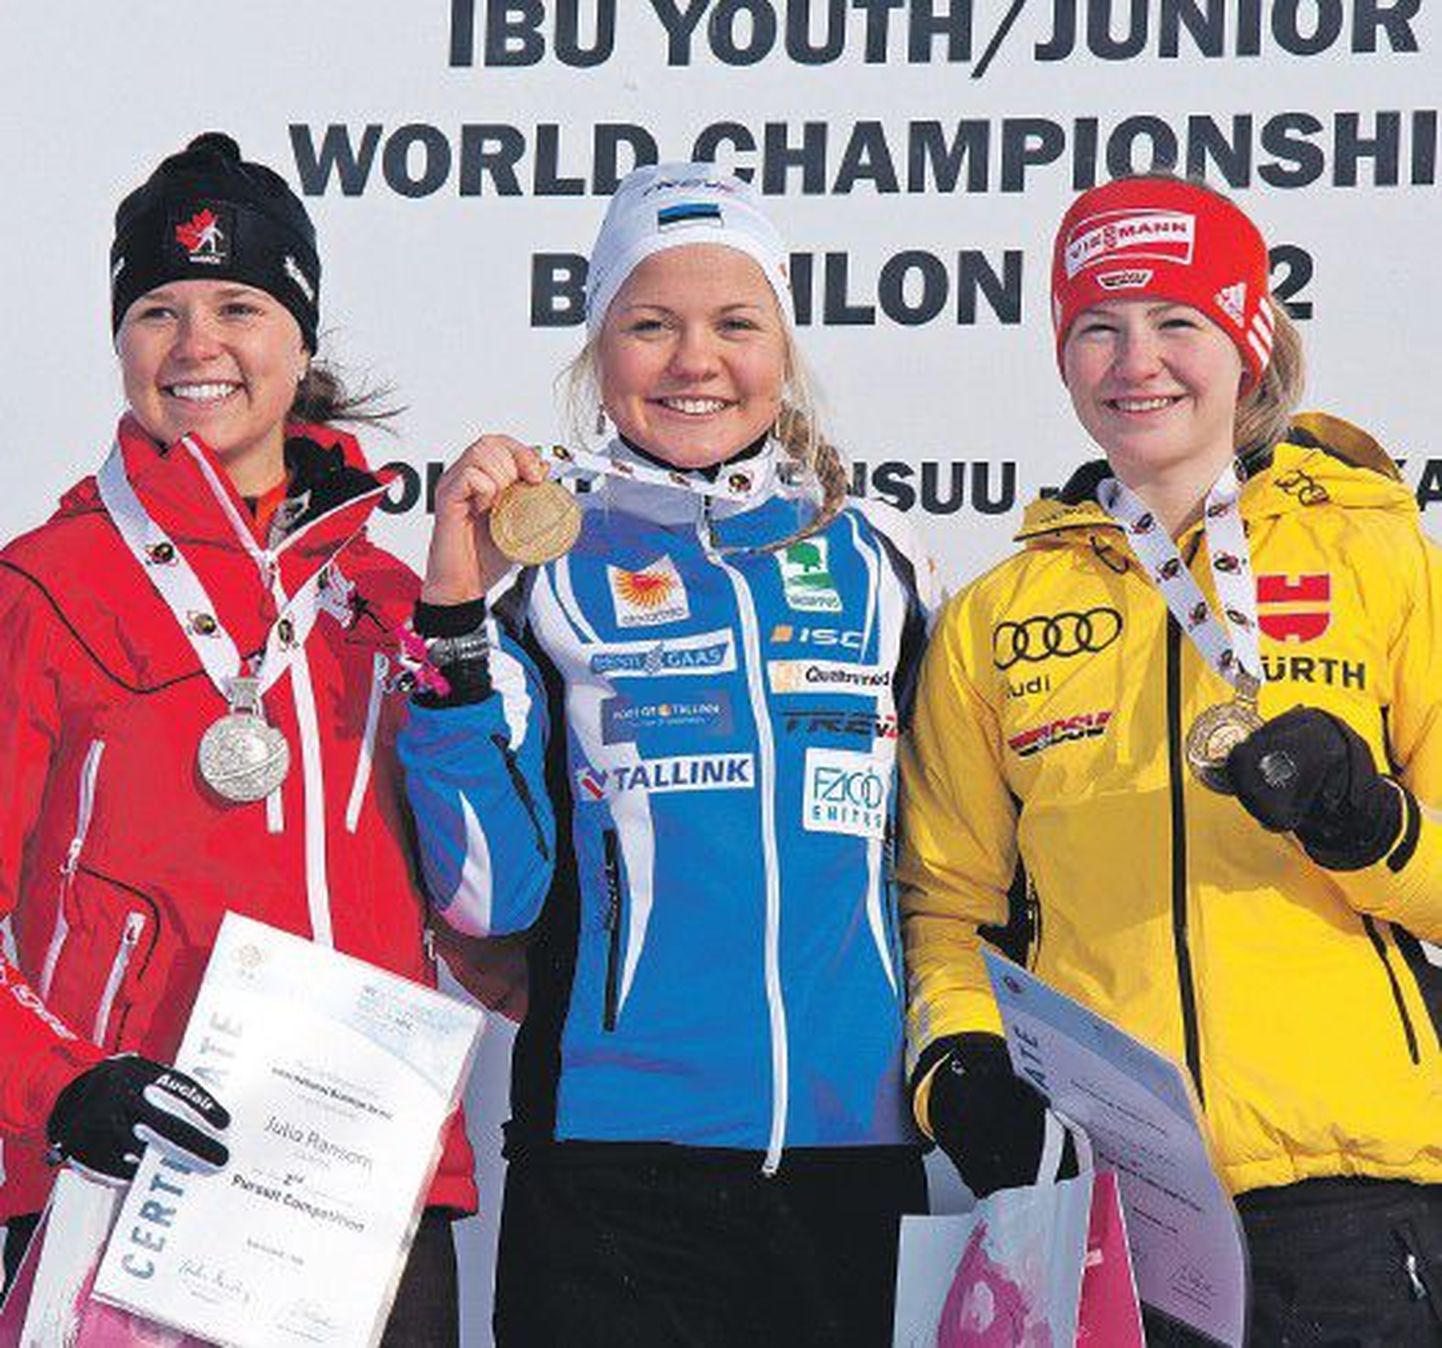 Эстонская биатлонистка Грете Гайм возглавила пьедестал почета на чемпионате мира среди юниоров, опередив Джулию Рэнсом из Канады (слева) и Аннику Кнолл из Германии.